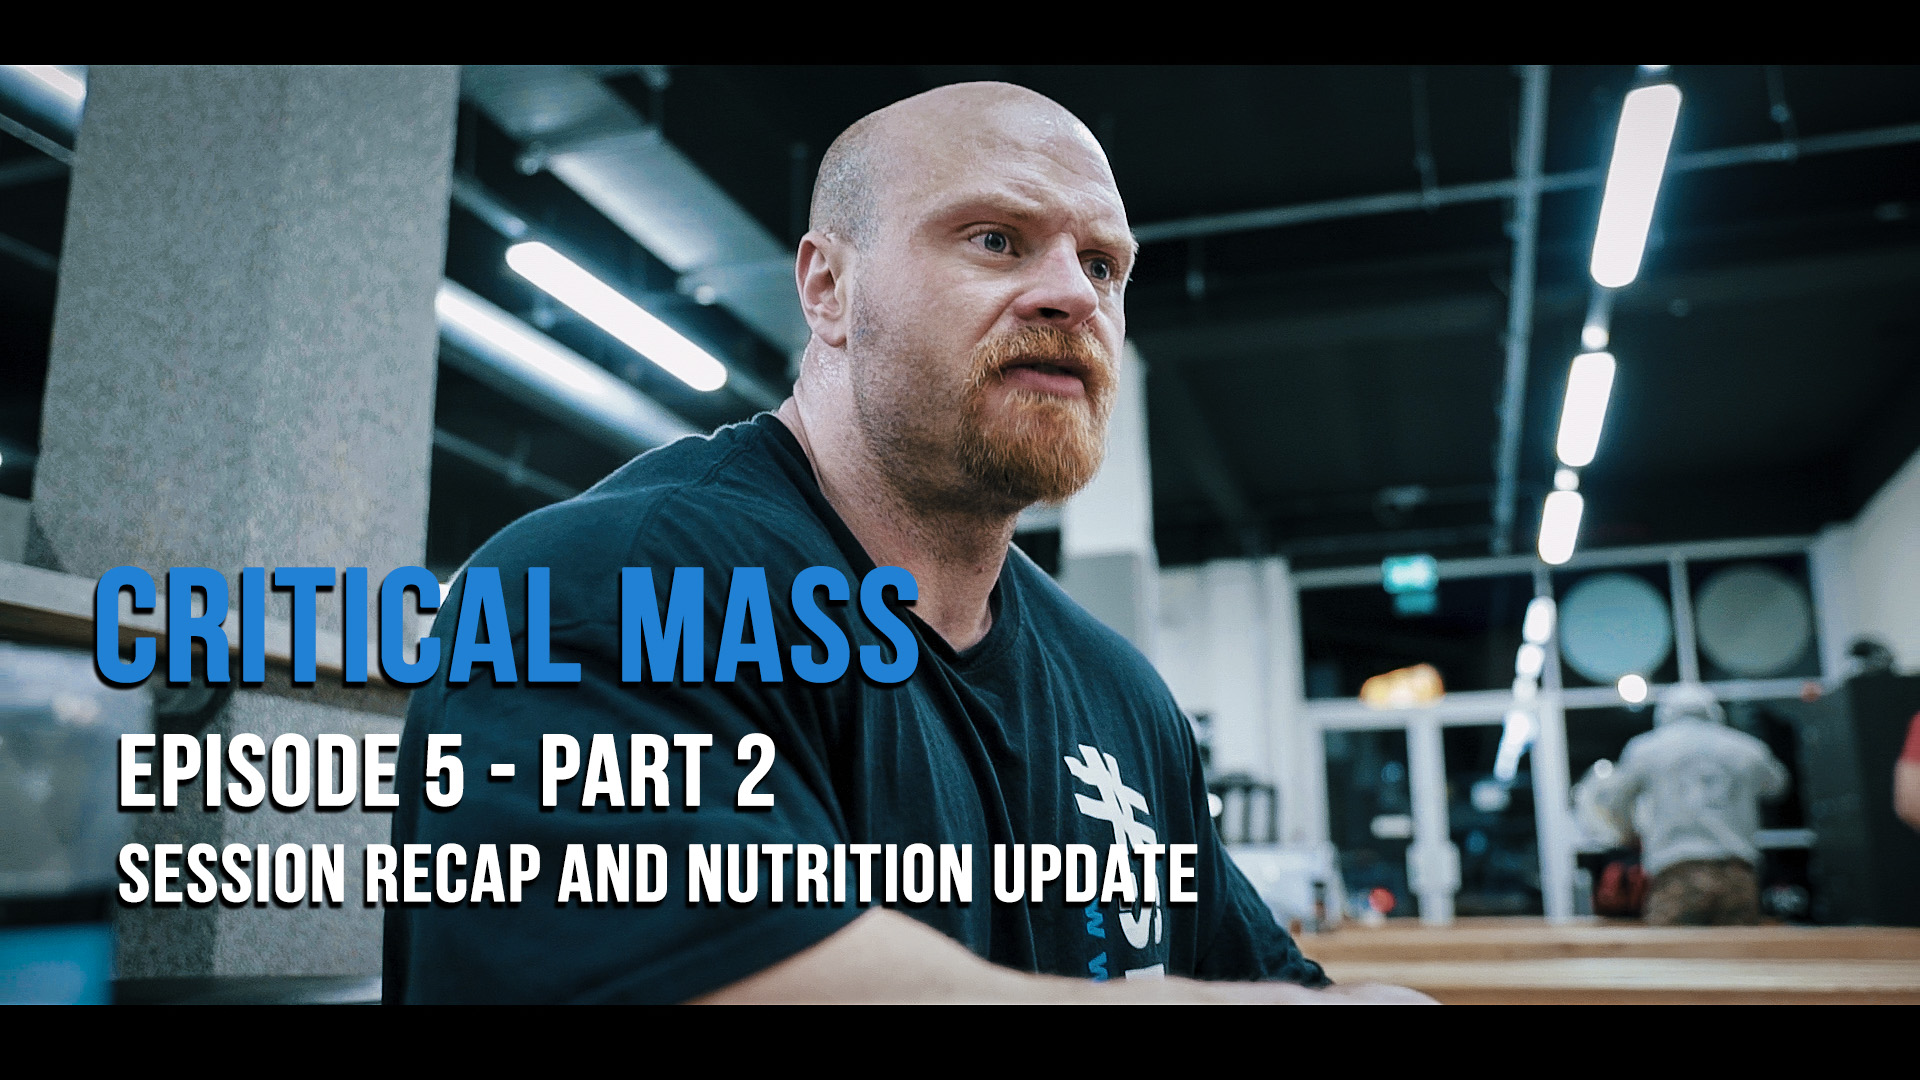 Critical Mass Ep5 Part 2 Recap